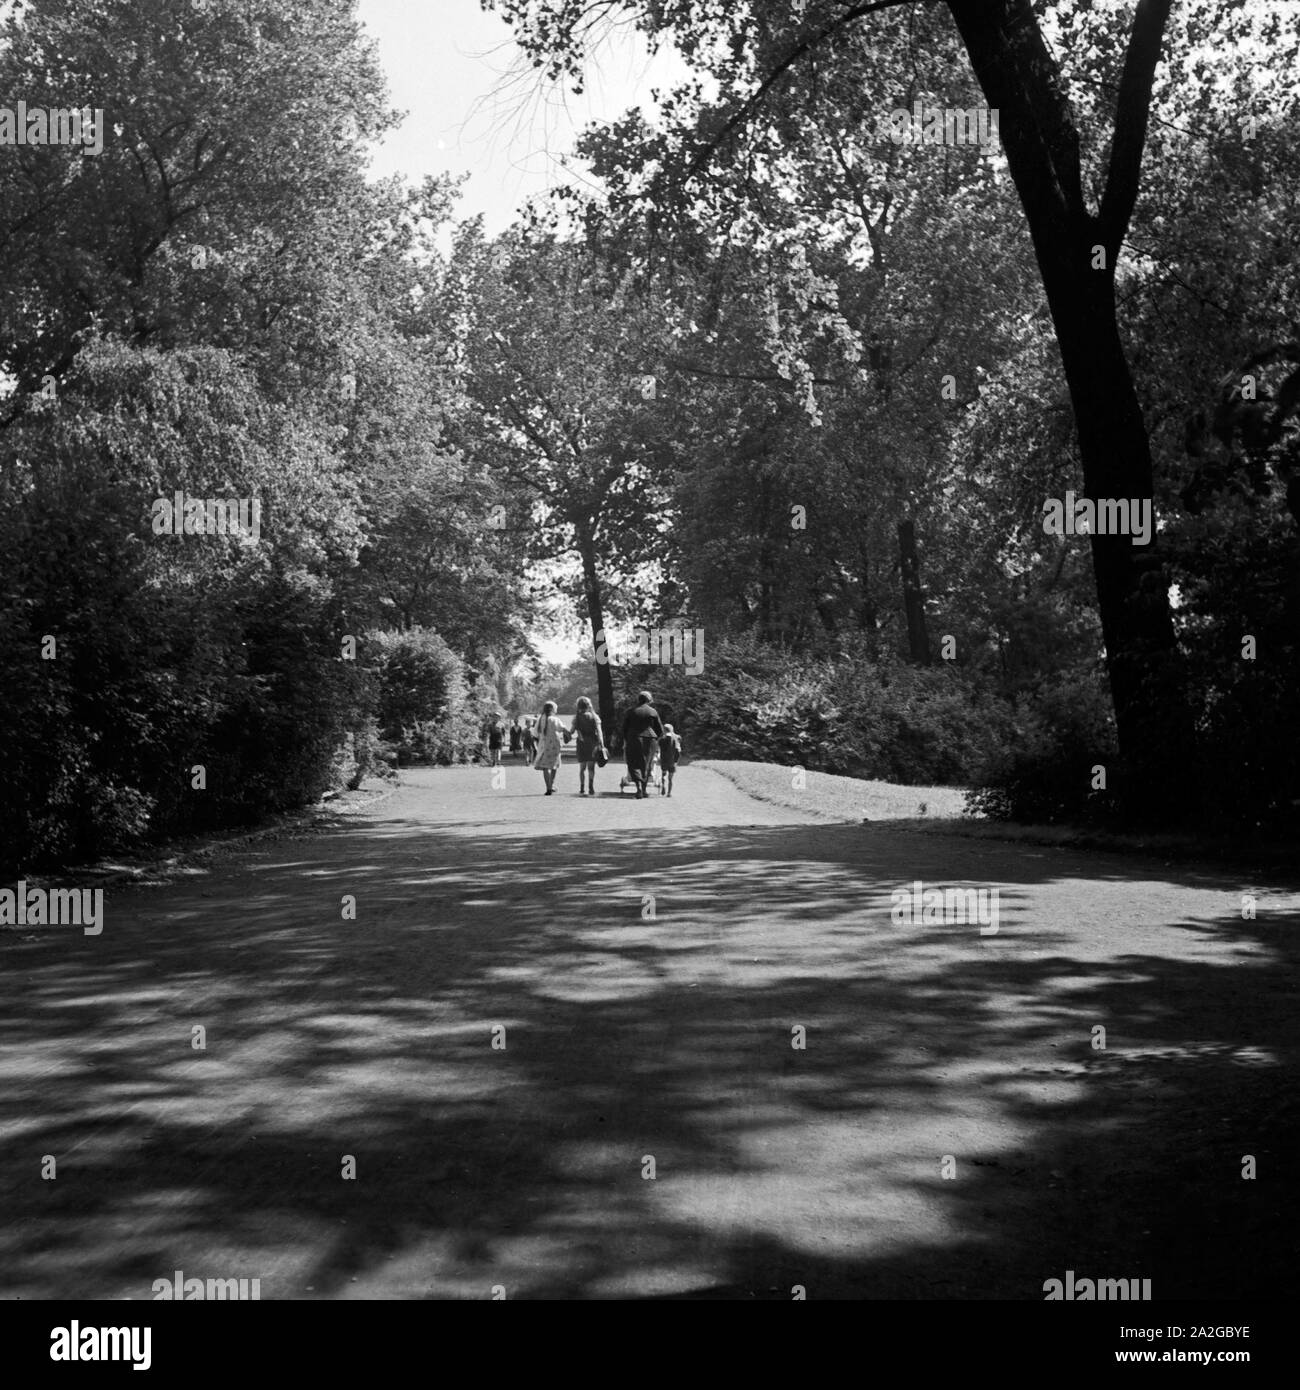 Spaziergang durch einen Park in Gelsenkirchen, Deutschland 1930er Jahre. Strolling through a park at Gelsenkirchen, Germany 1930s. Stock Photo